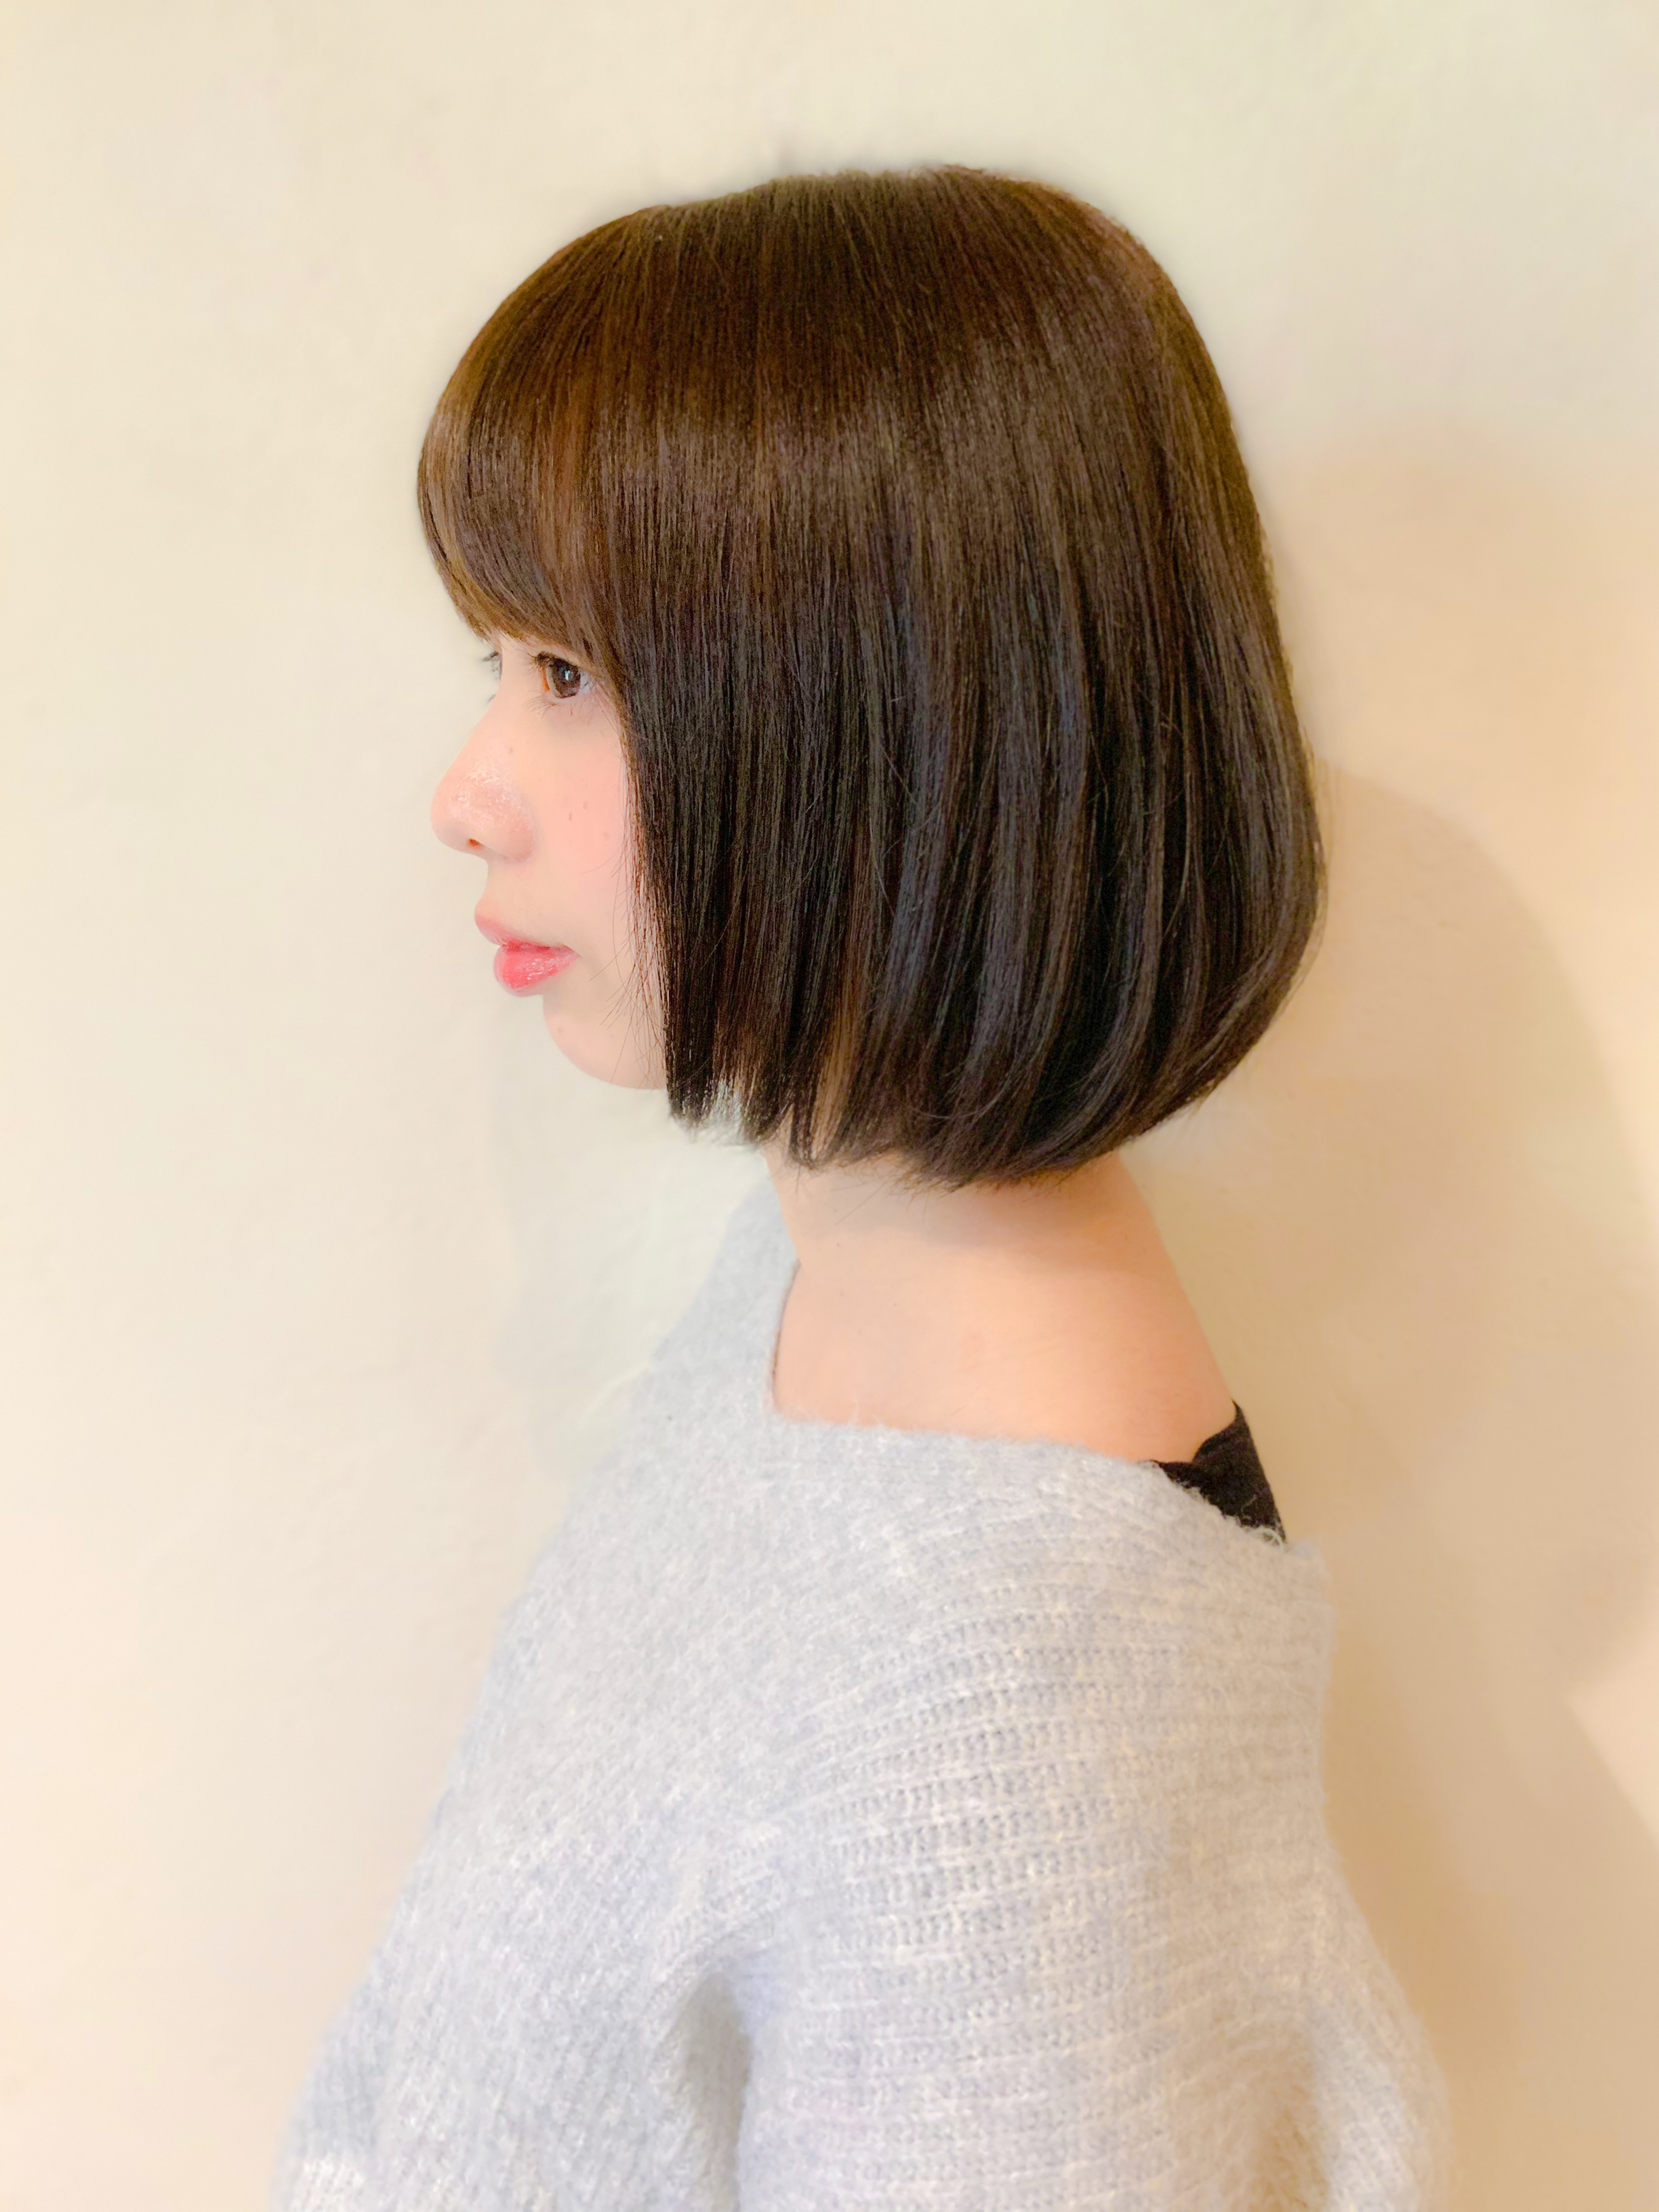 21年冬 ストレートボブの種類と似合う髪型について解説します 似合わせカットが上手い東京の美容師 美容室minx銀座 蛭田のブログ